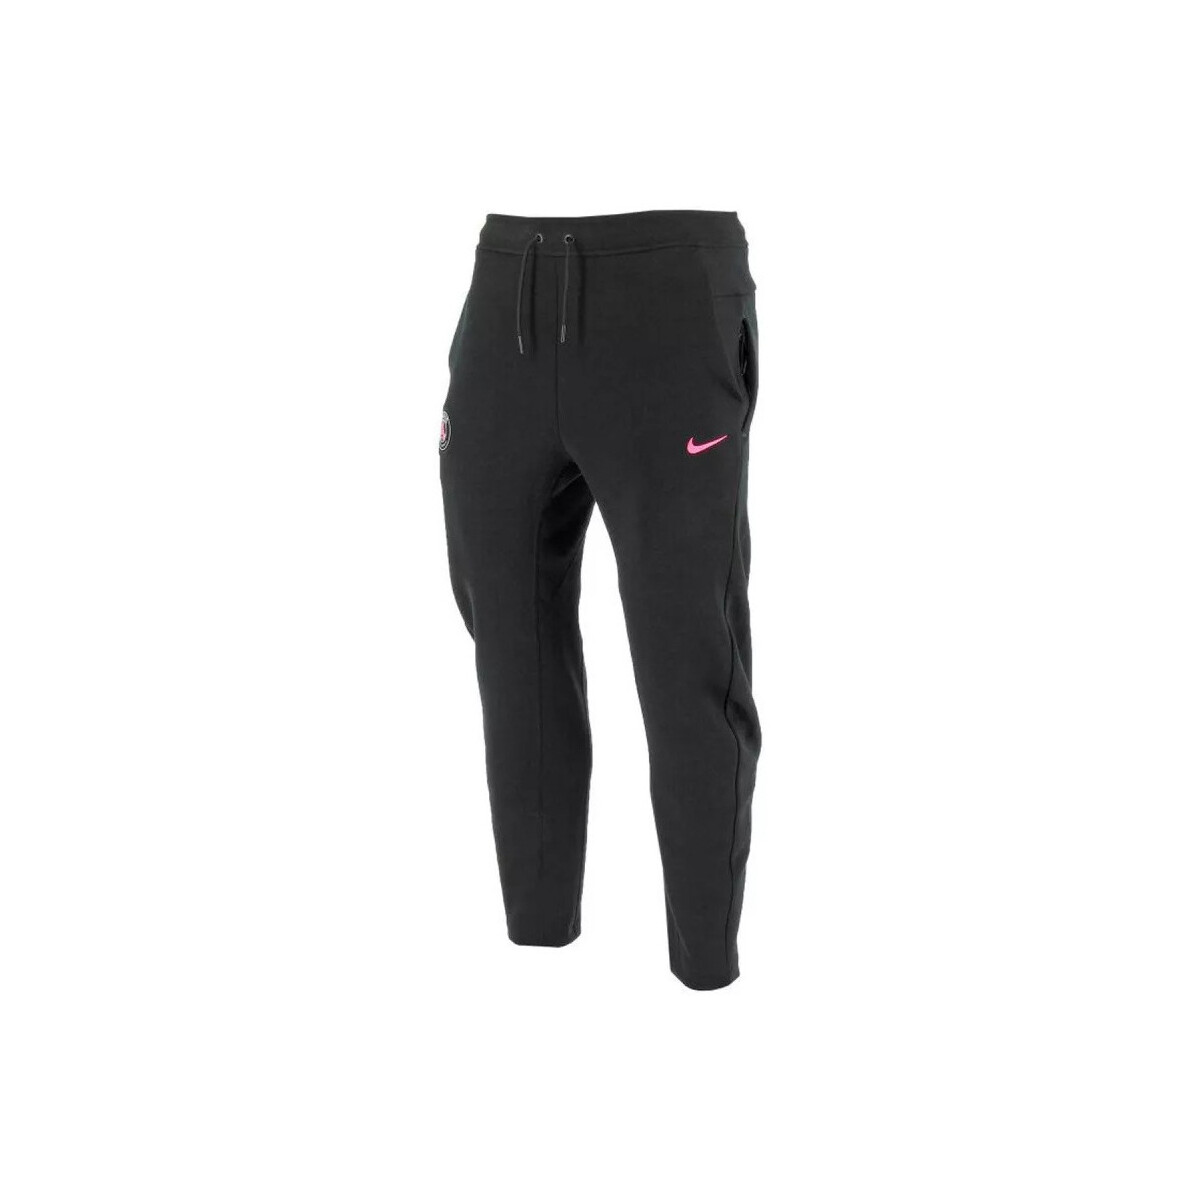 Vêtements Homme Pantalons de survêtement Nike PARIS SAINT-GERMAIN TECH FLEECE Noir